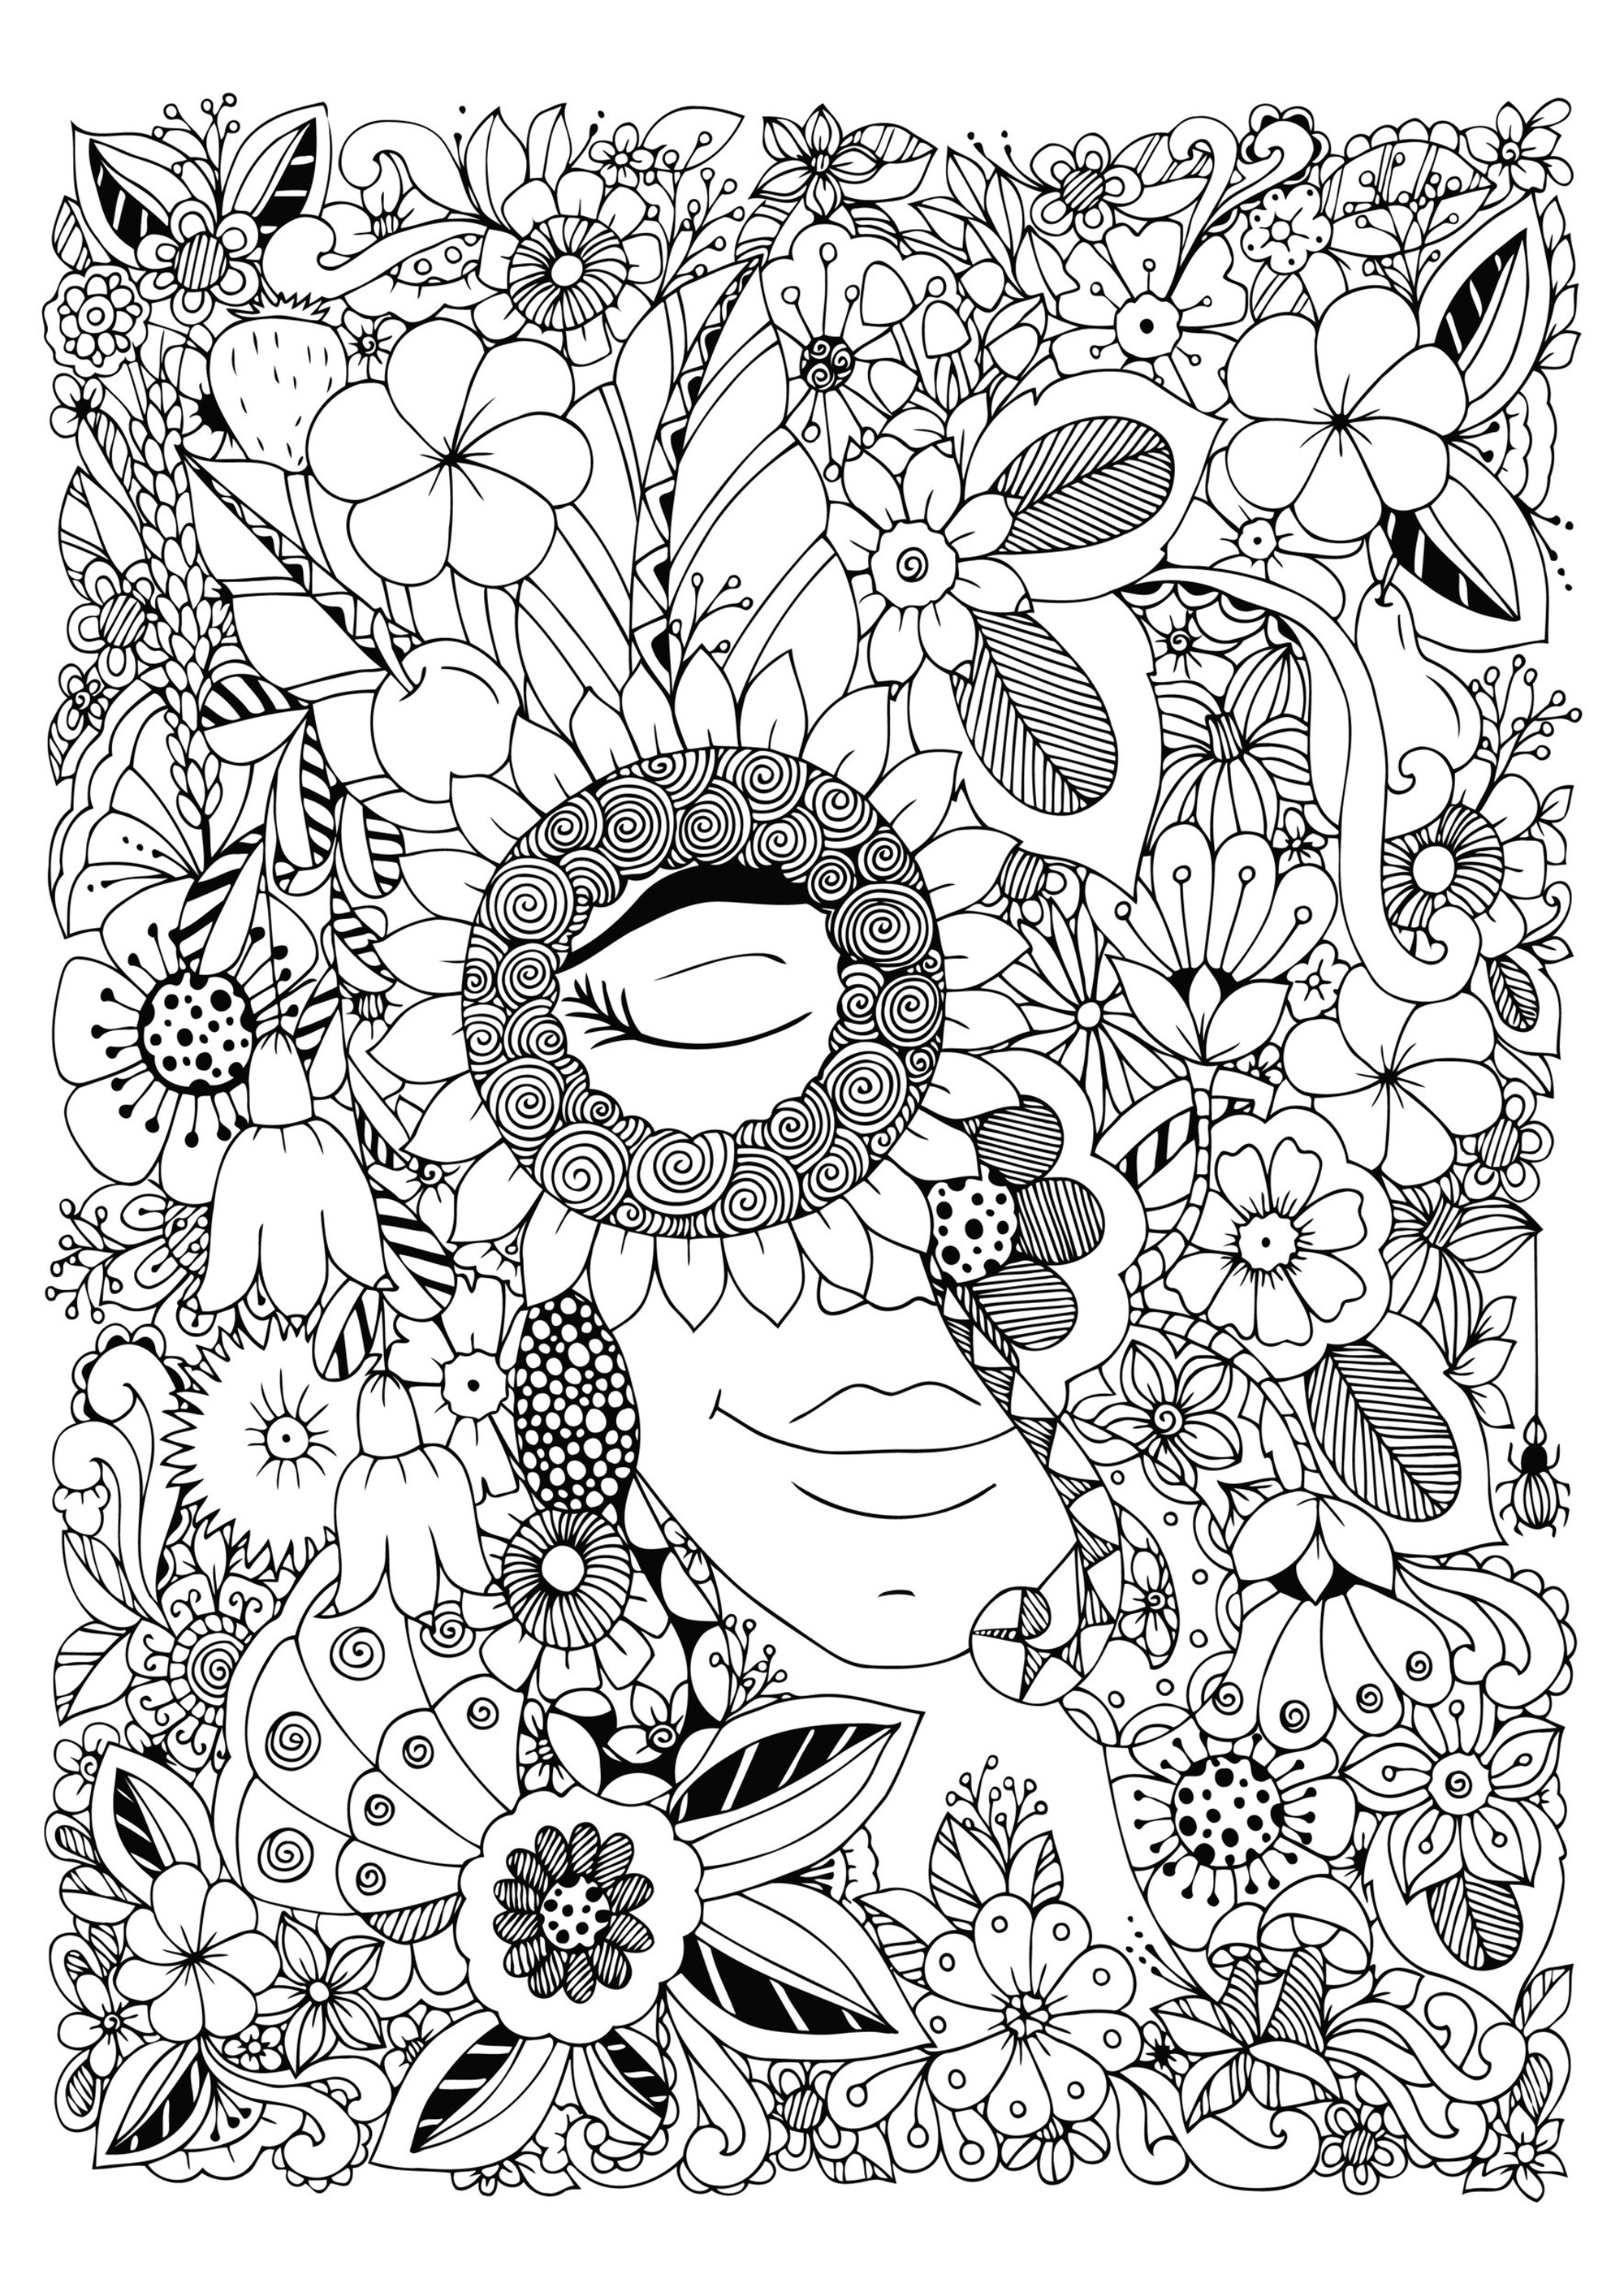 Femme aux yeux fermés, cachée au milieu de jolies fleurs très variées, Artiste : Tanvetka   Source : 123rf